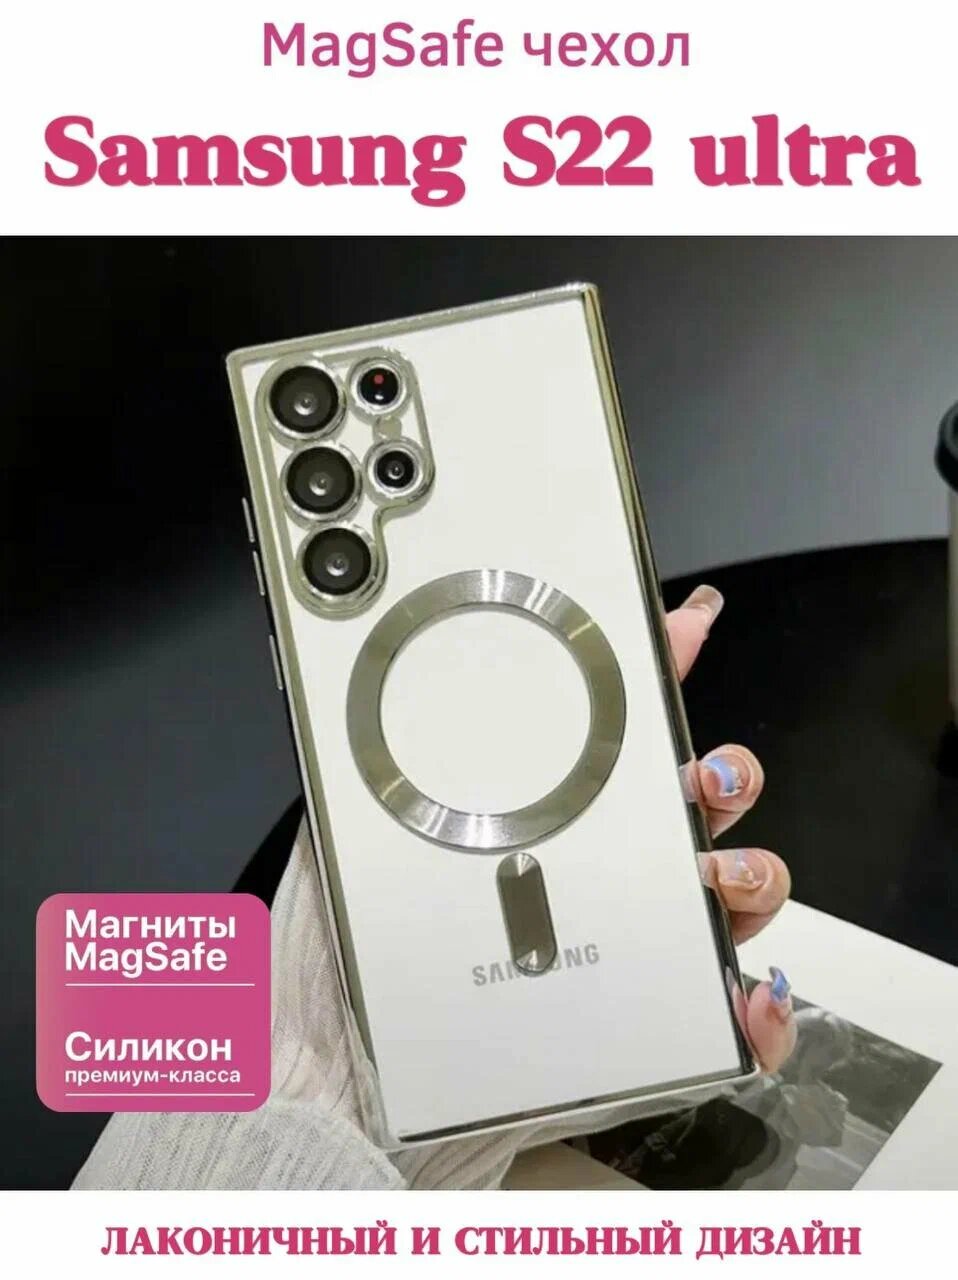 Чехол для Samsung Galaxy S22 Ultra титан c магнитным кольцом MagSafe, чехол титан (самсунг с22 ультра) с защитой камеры ( линз)